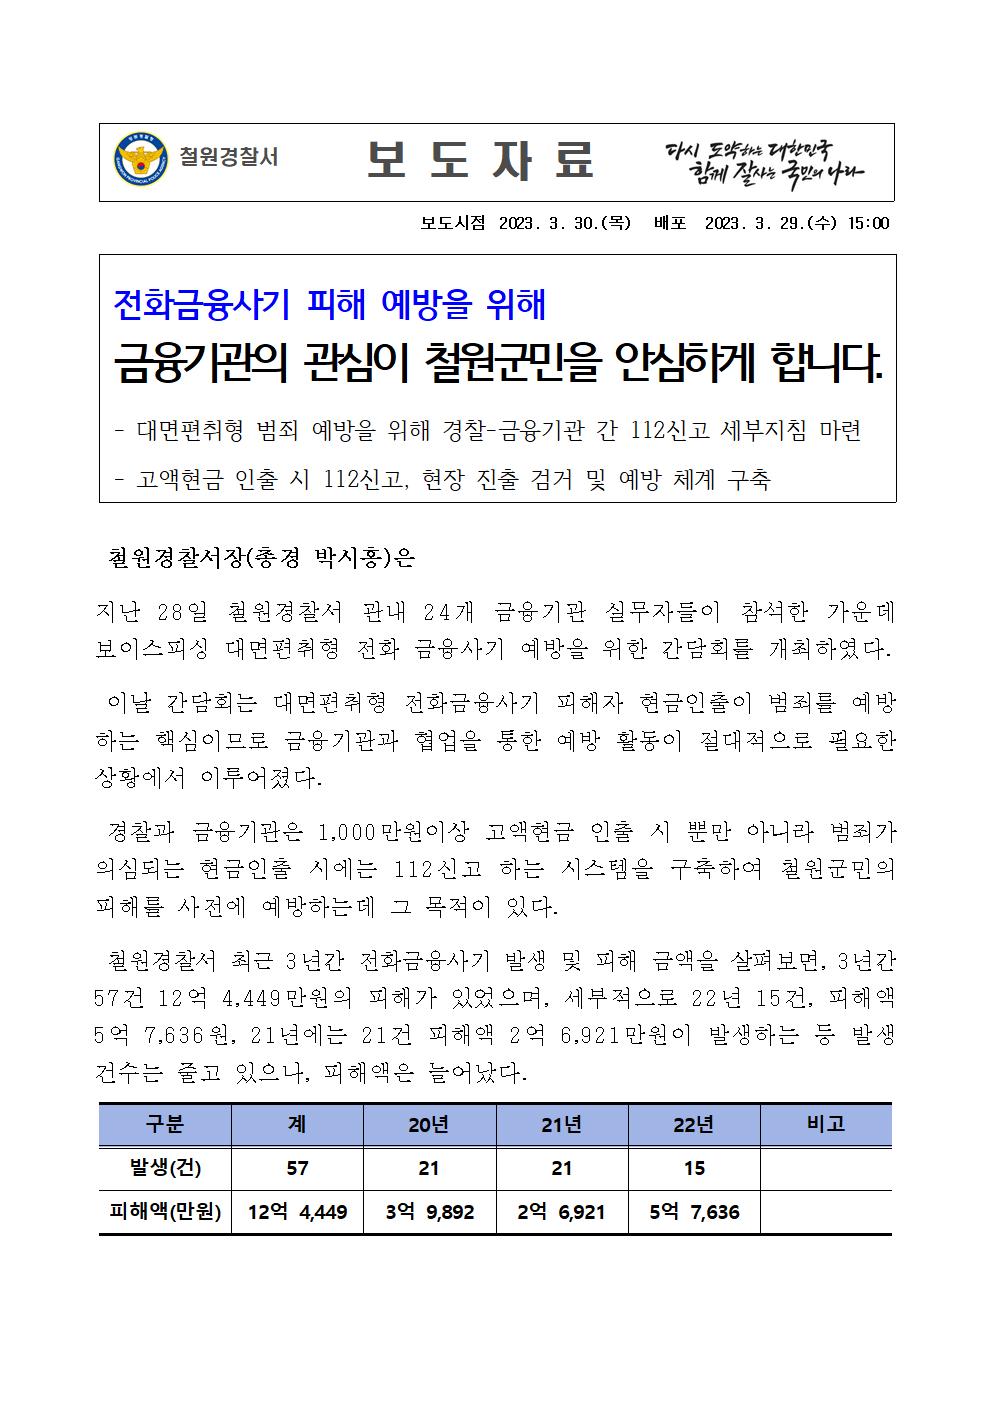 전화금융사기피해 예방 홍보-23.3.30보이스피싱 보도자료 표준양식